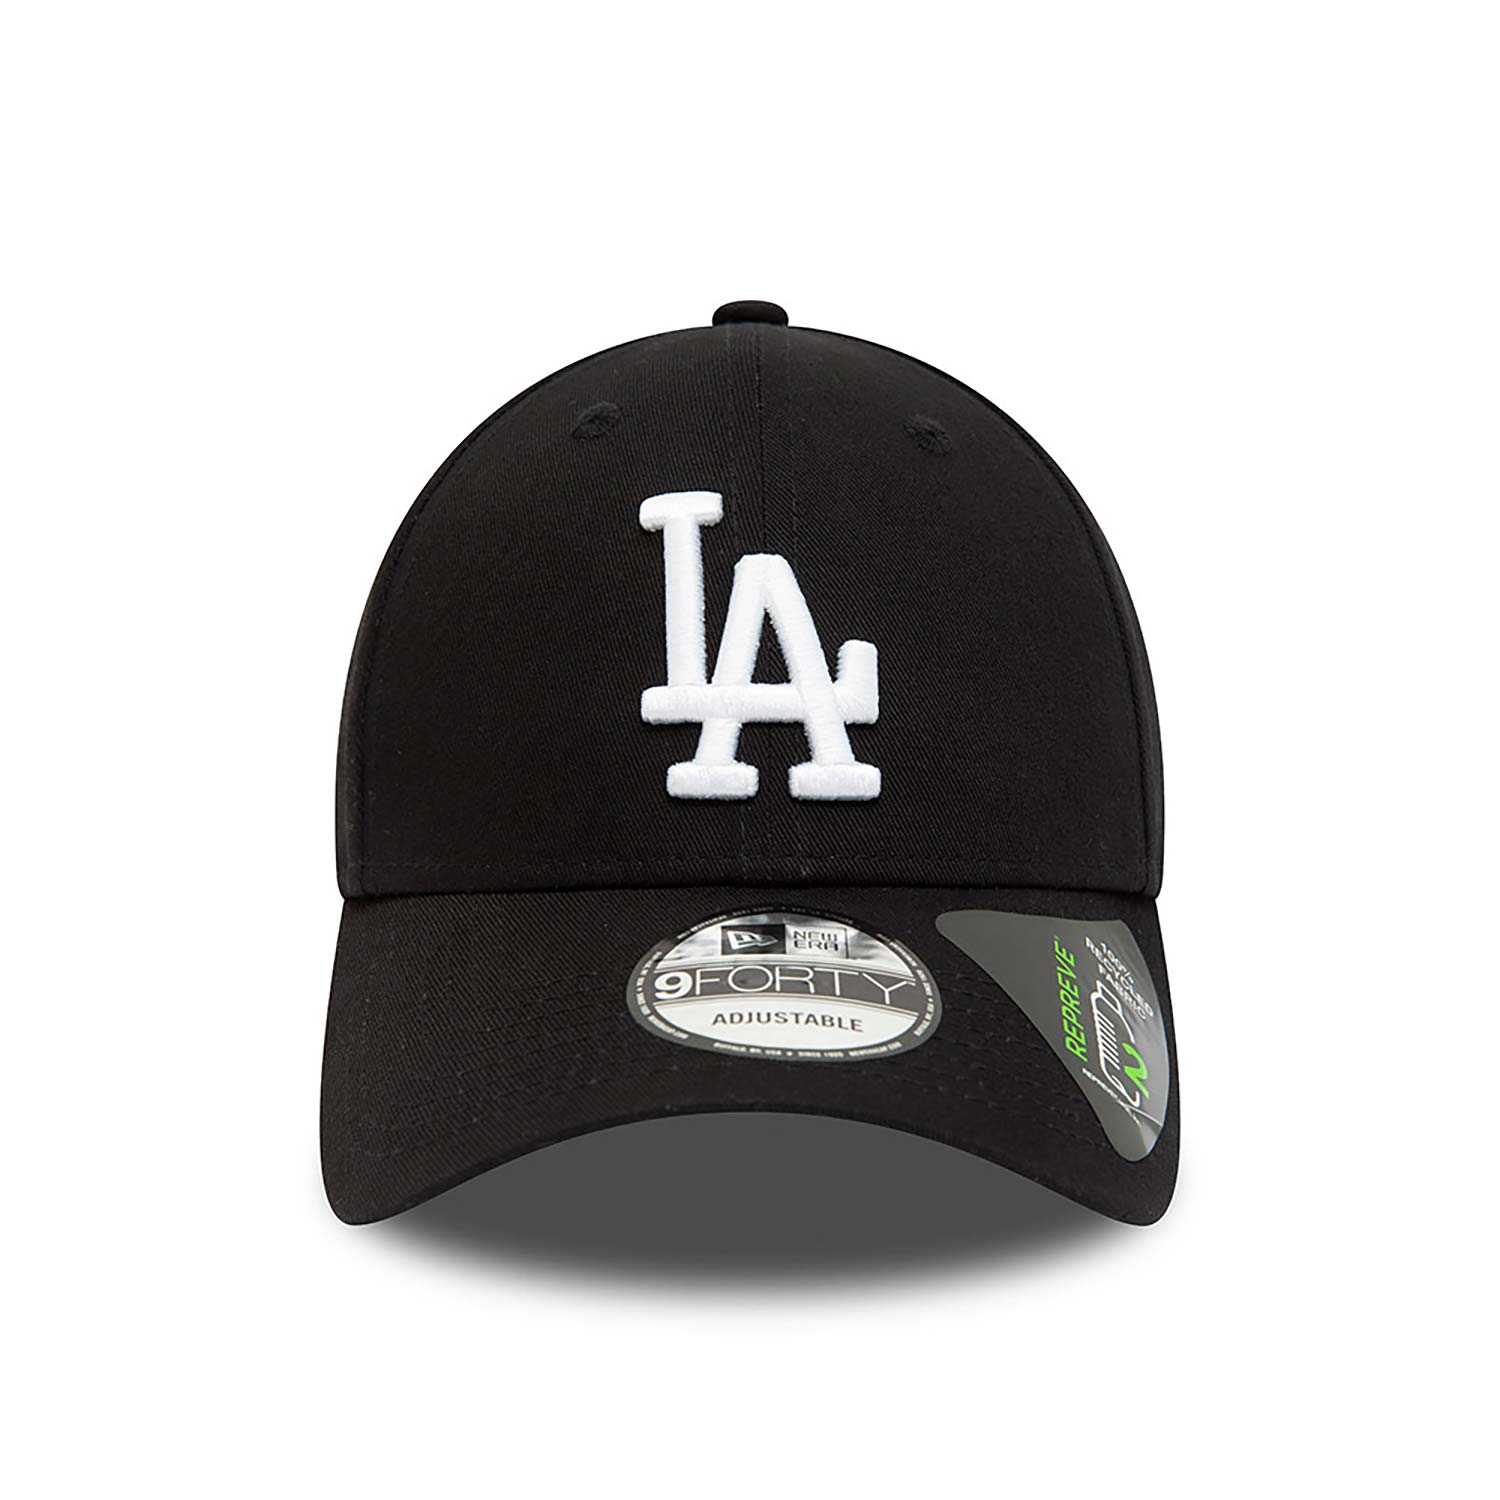 LA Dodgers Repreve League Essential Black 9FORTY Adjustable Cap